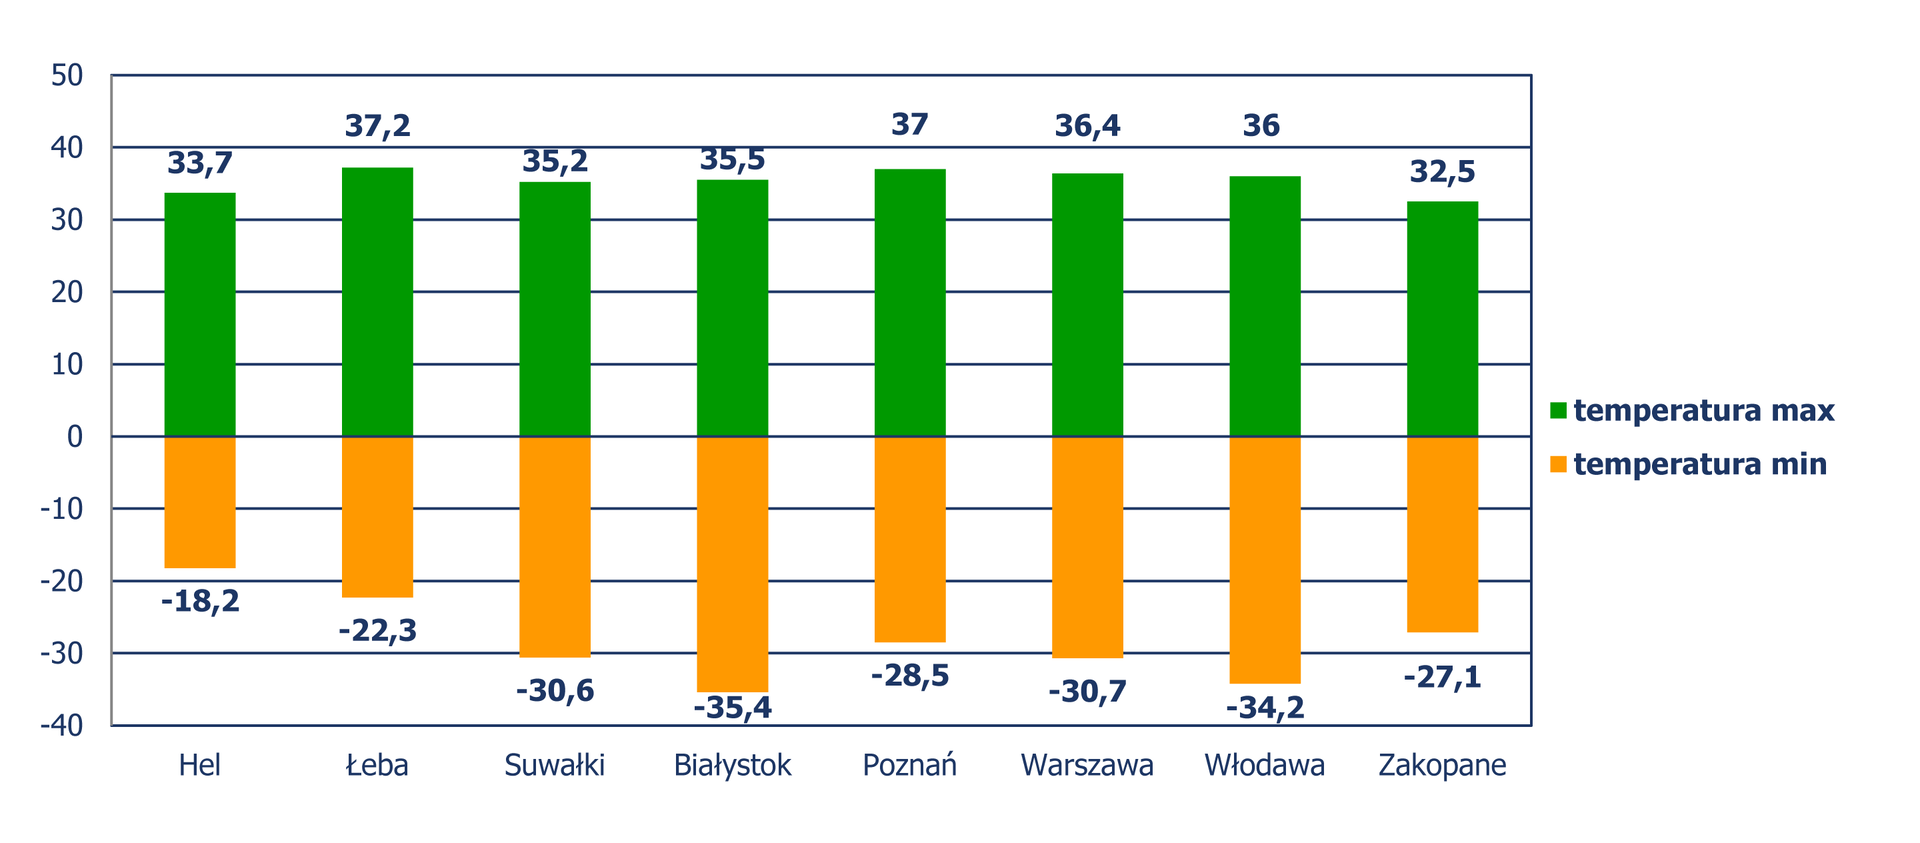 Diagram słupkowy pionowy, z którego odczytujemy minimalne i maksymalne temperatury w wybranych miastach Polski, zmierzone w latach od 1971 do 2011. Temperatura minimalna: Hel: -18,2 stopni Celsjusza, Łeba: -22,3 stopni Celsjusza, Suwałki: -30,6 stopni Celsjusza, Białystok: -35,4 stopni Celsjusza, Poznań: -28,5 stopni Celsjusza, Warszawa: -30,7 stopni Celsjusza, Włodawa: -34,2 stopni Celsjusza i Zakopane: -27,1 stopni Celsjusza. Temperatura maksymalna: Hel: 33,7 stopni Celsjusza, Łeba: 37,2 stopni Celsjusza, Suwałki: 35,2 stopni Celsjusza, Białystok: 35,5 stopni Celsjusza, Poznań: 37 stopni Celsjusza, Warszawa: 36,4 stopni Celsjusza, Włodawa: 36 stopni Celsjusza i Zakopane: 32,5 stopni Celsjusza.